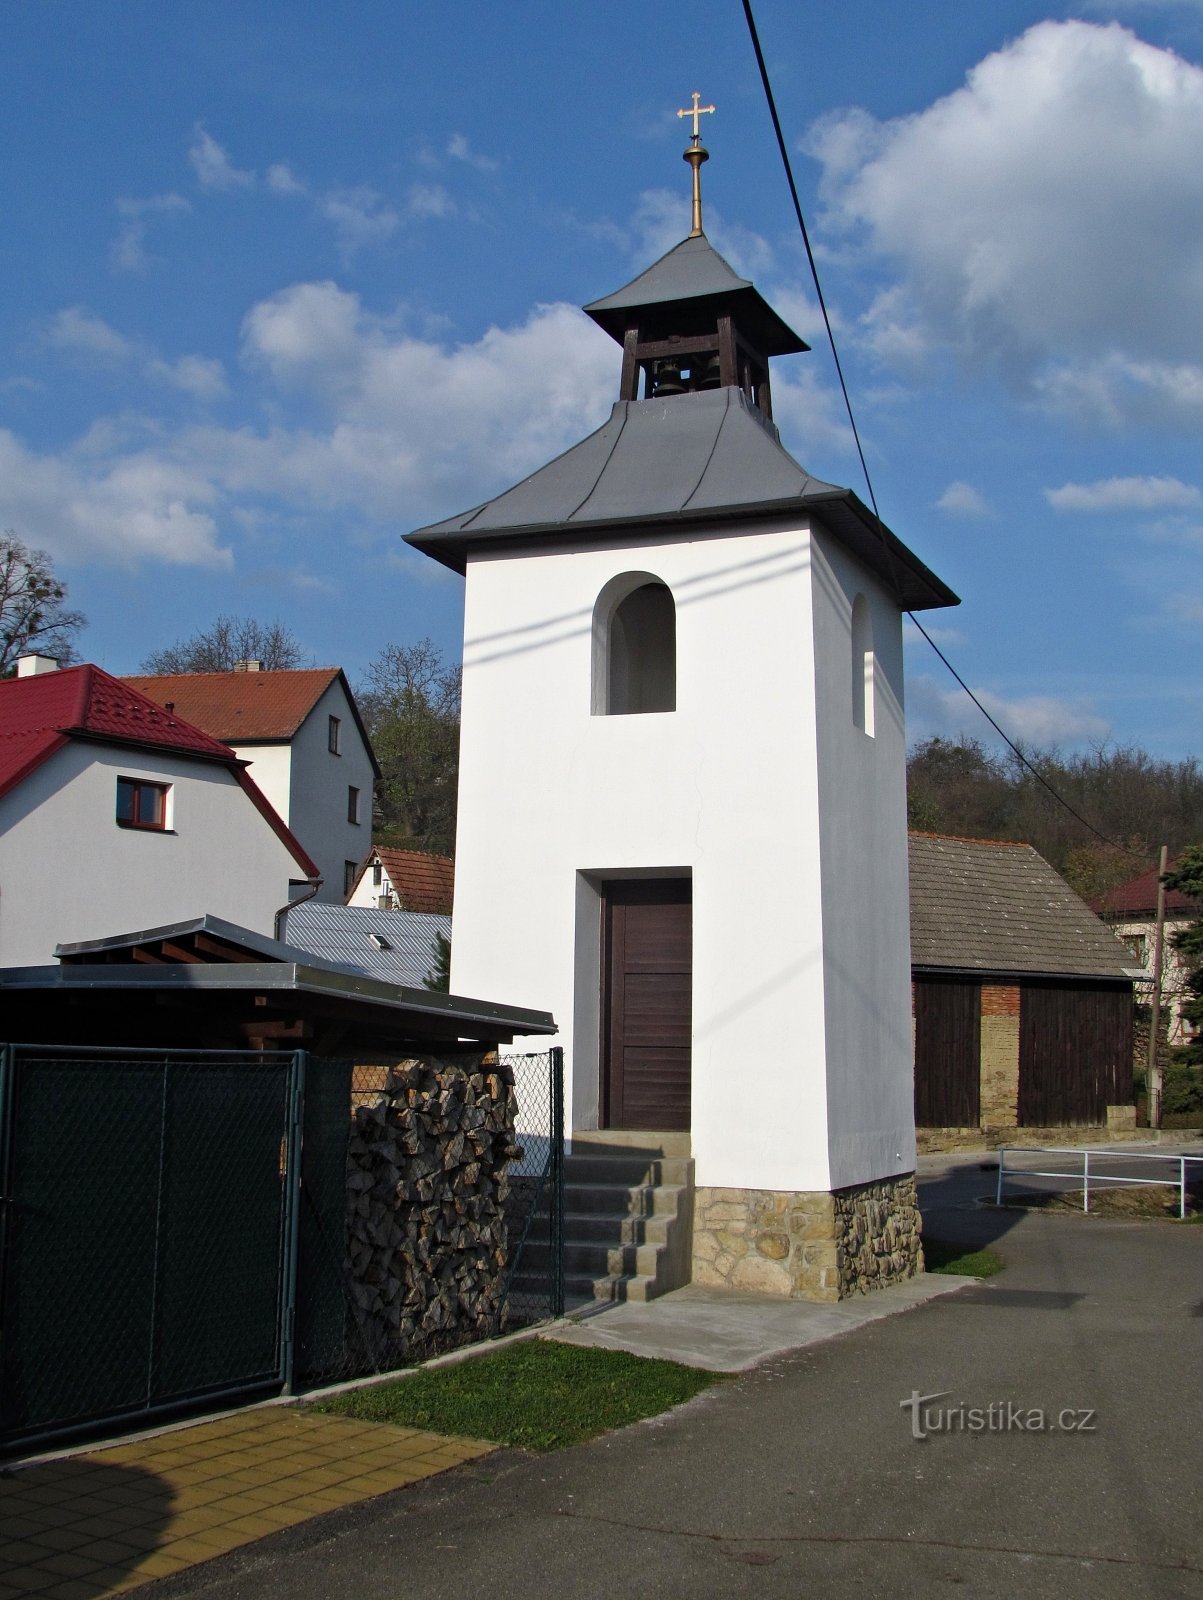 Ludkovice - monumenten in het centrum van het dorp